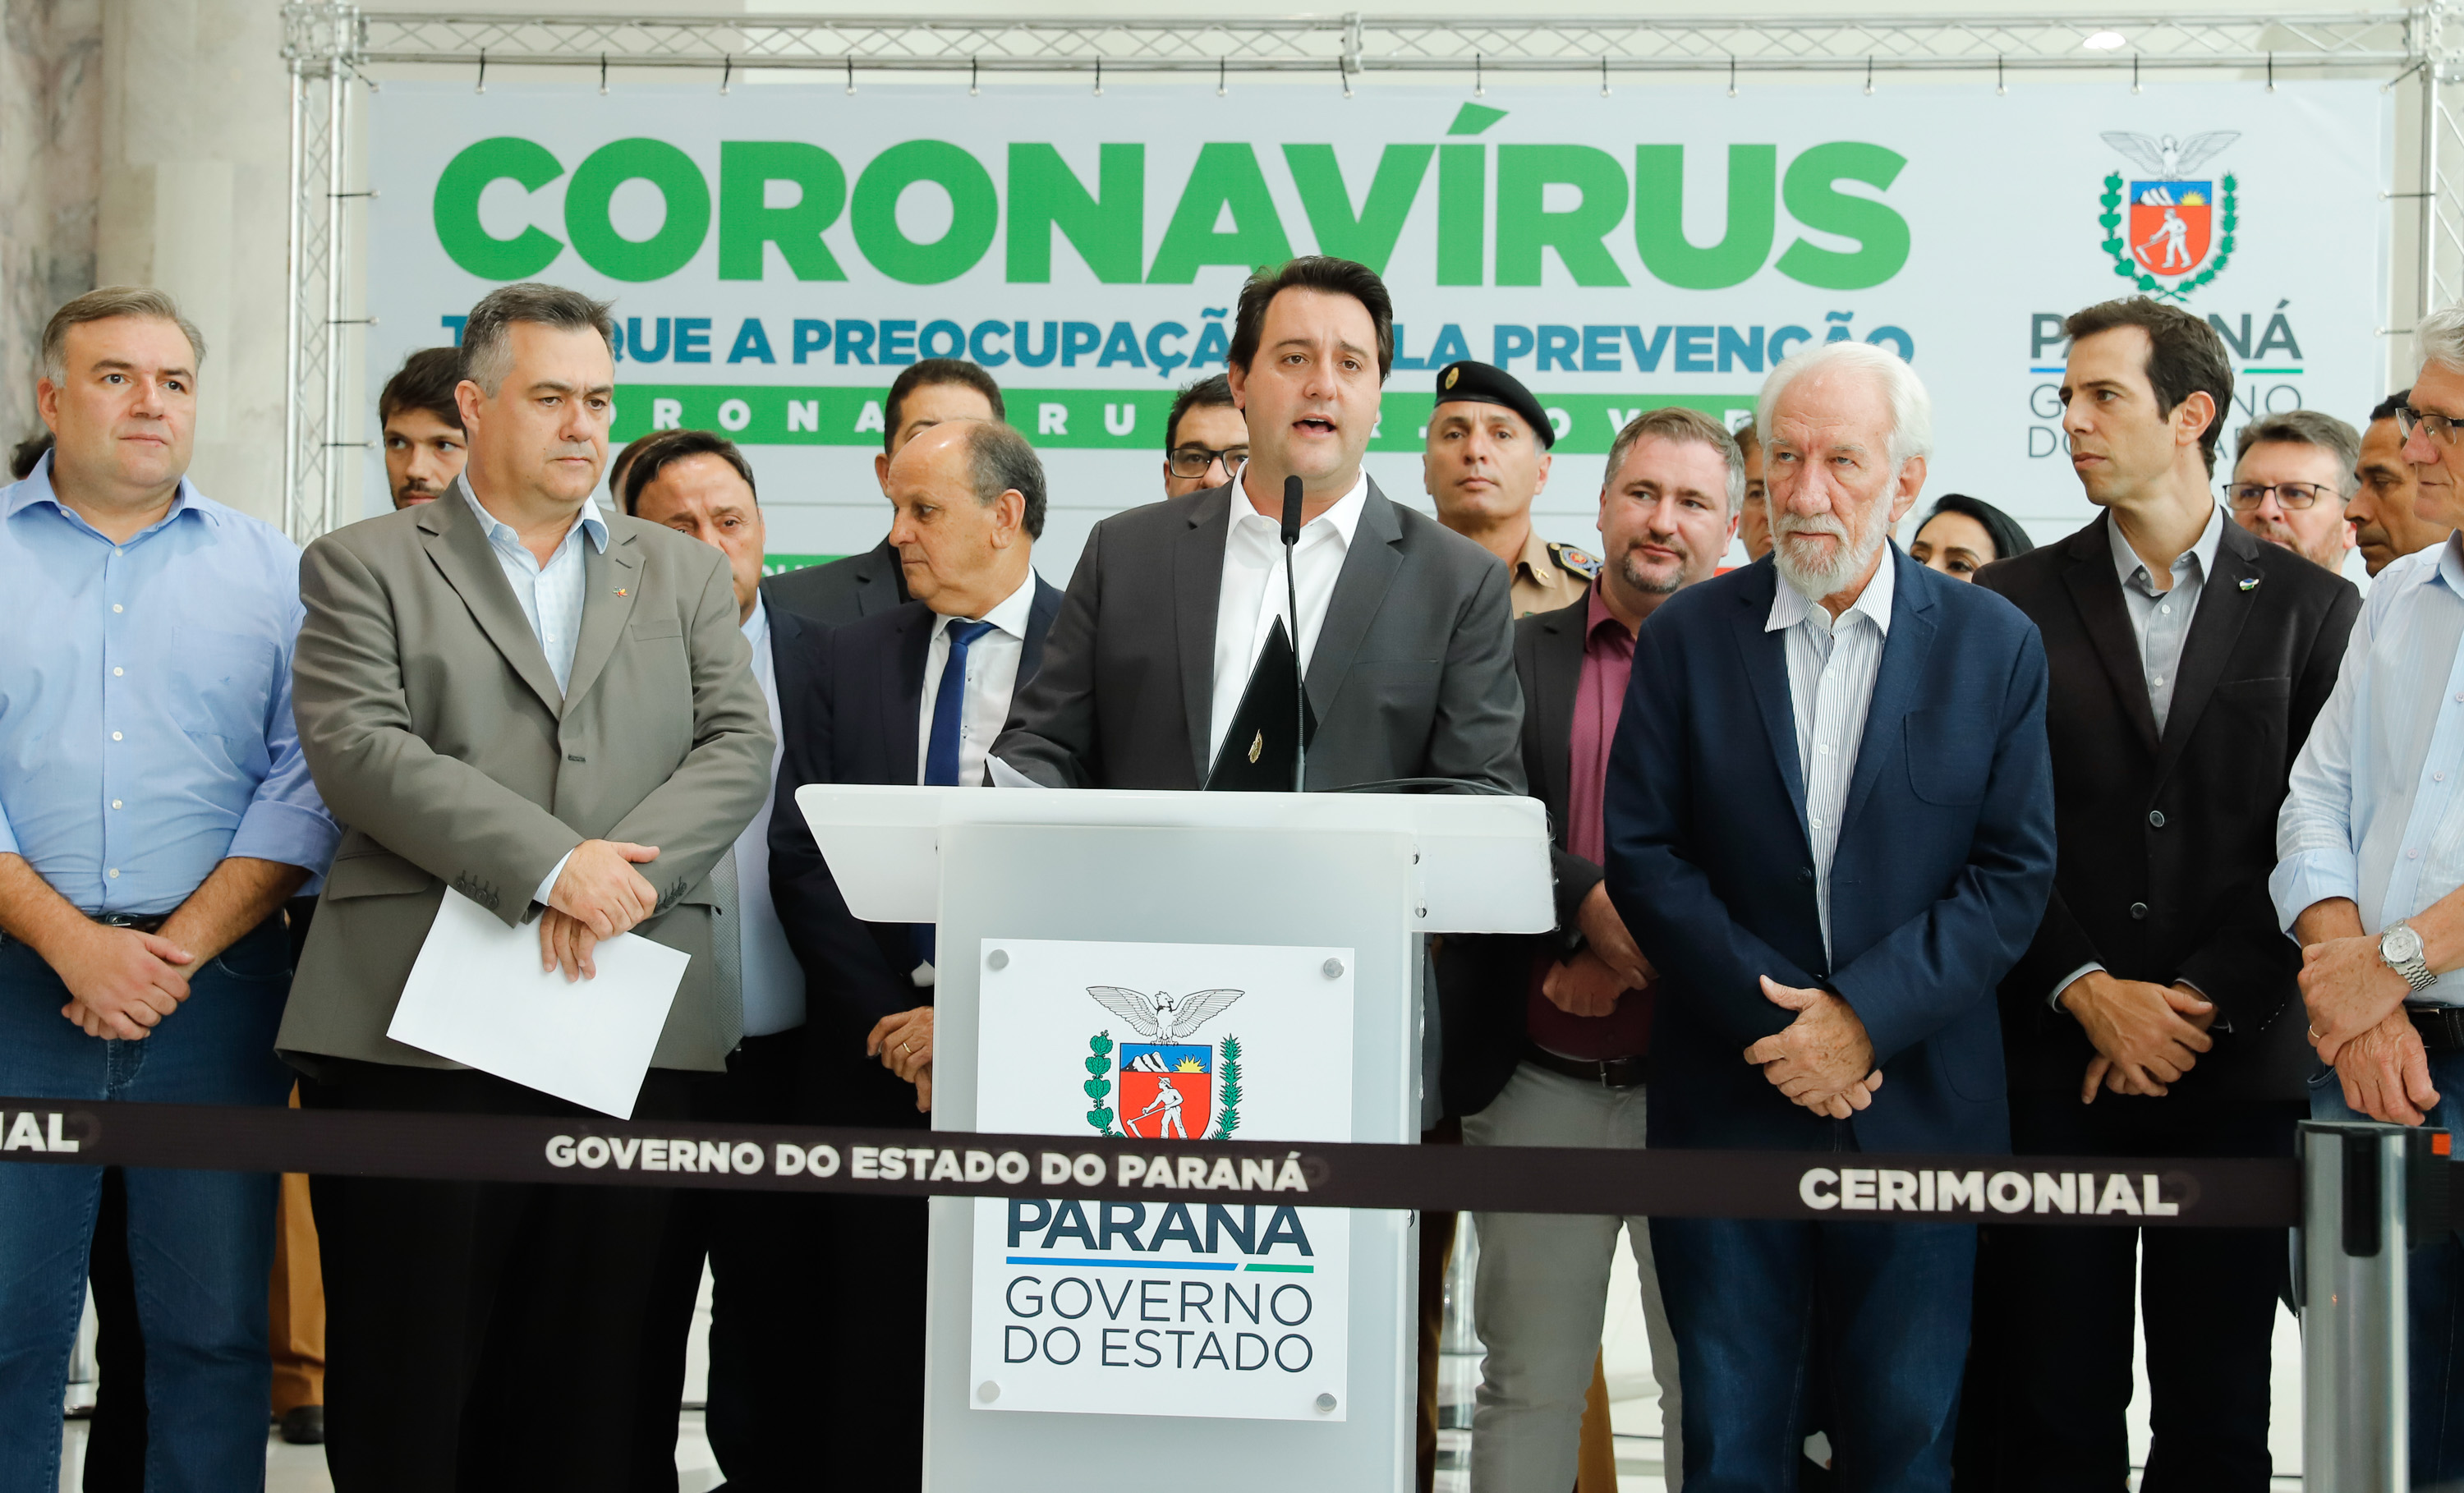  Governo do Paraná anuncia medidas para enfrentamento ao coronavírus